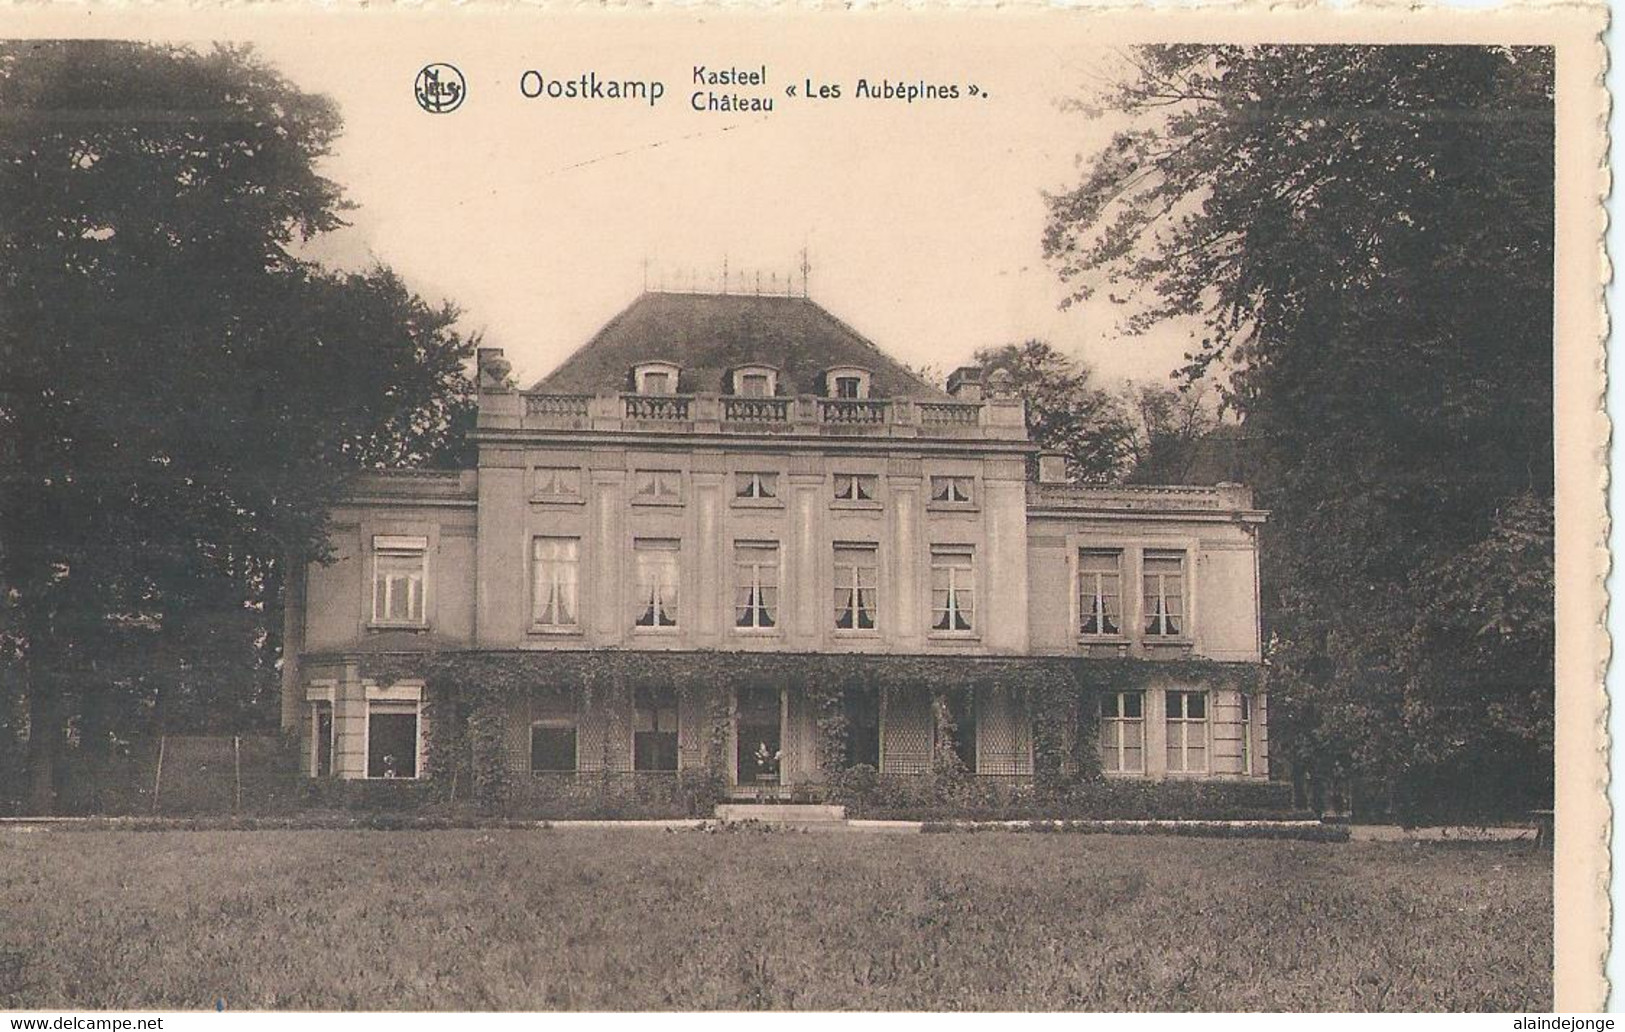 Oostkamp - Oostcamp - Kasteel " Les Aubépines " Château - Uitgever Jos. De Smidt, Oostkamp - Oostkamp